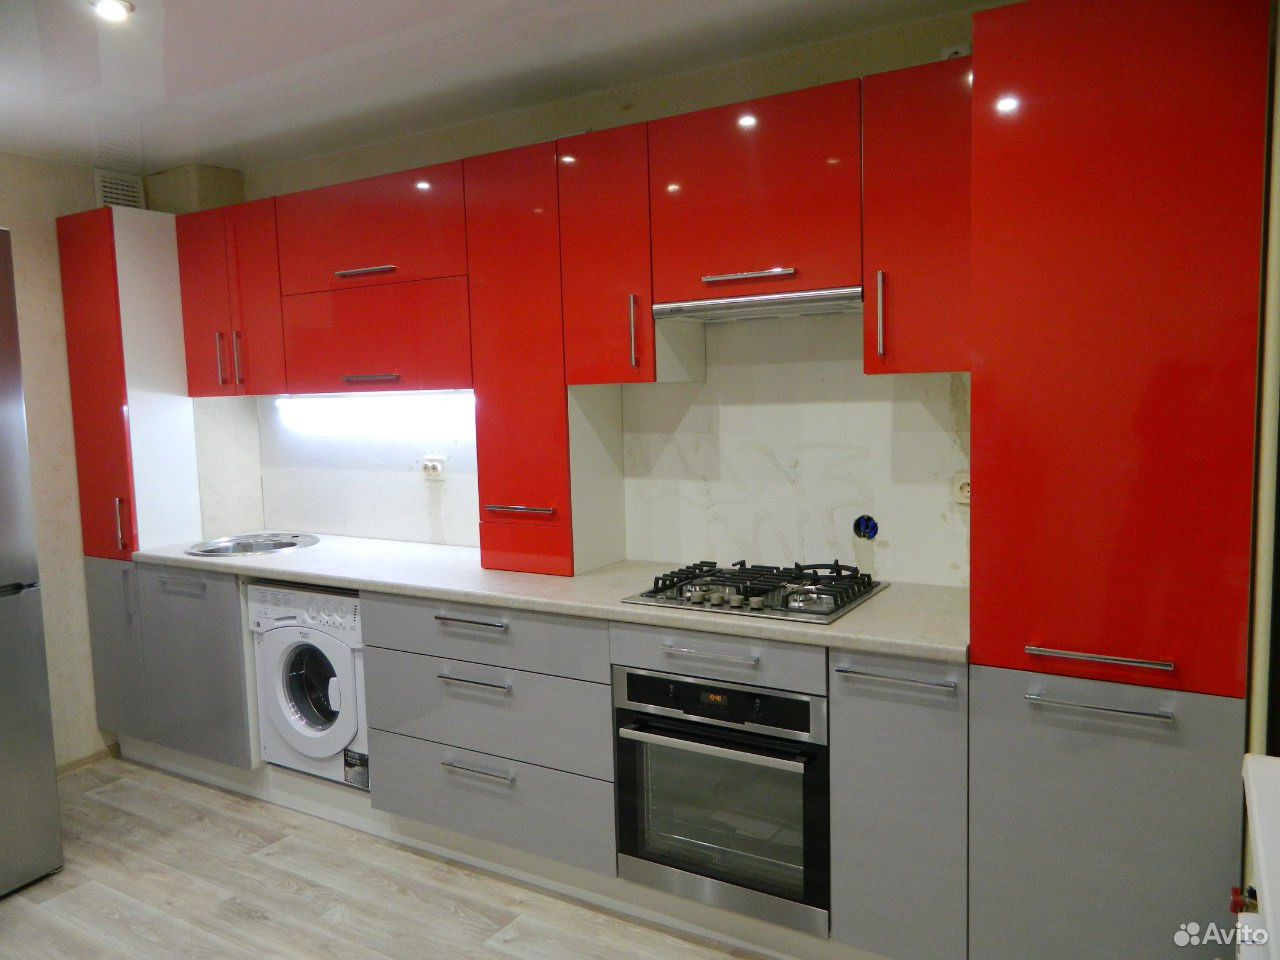 Кухонный гарнитур серый низ красный верх